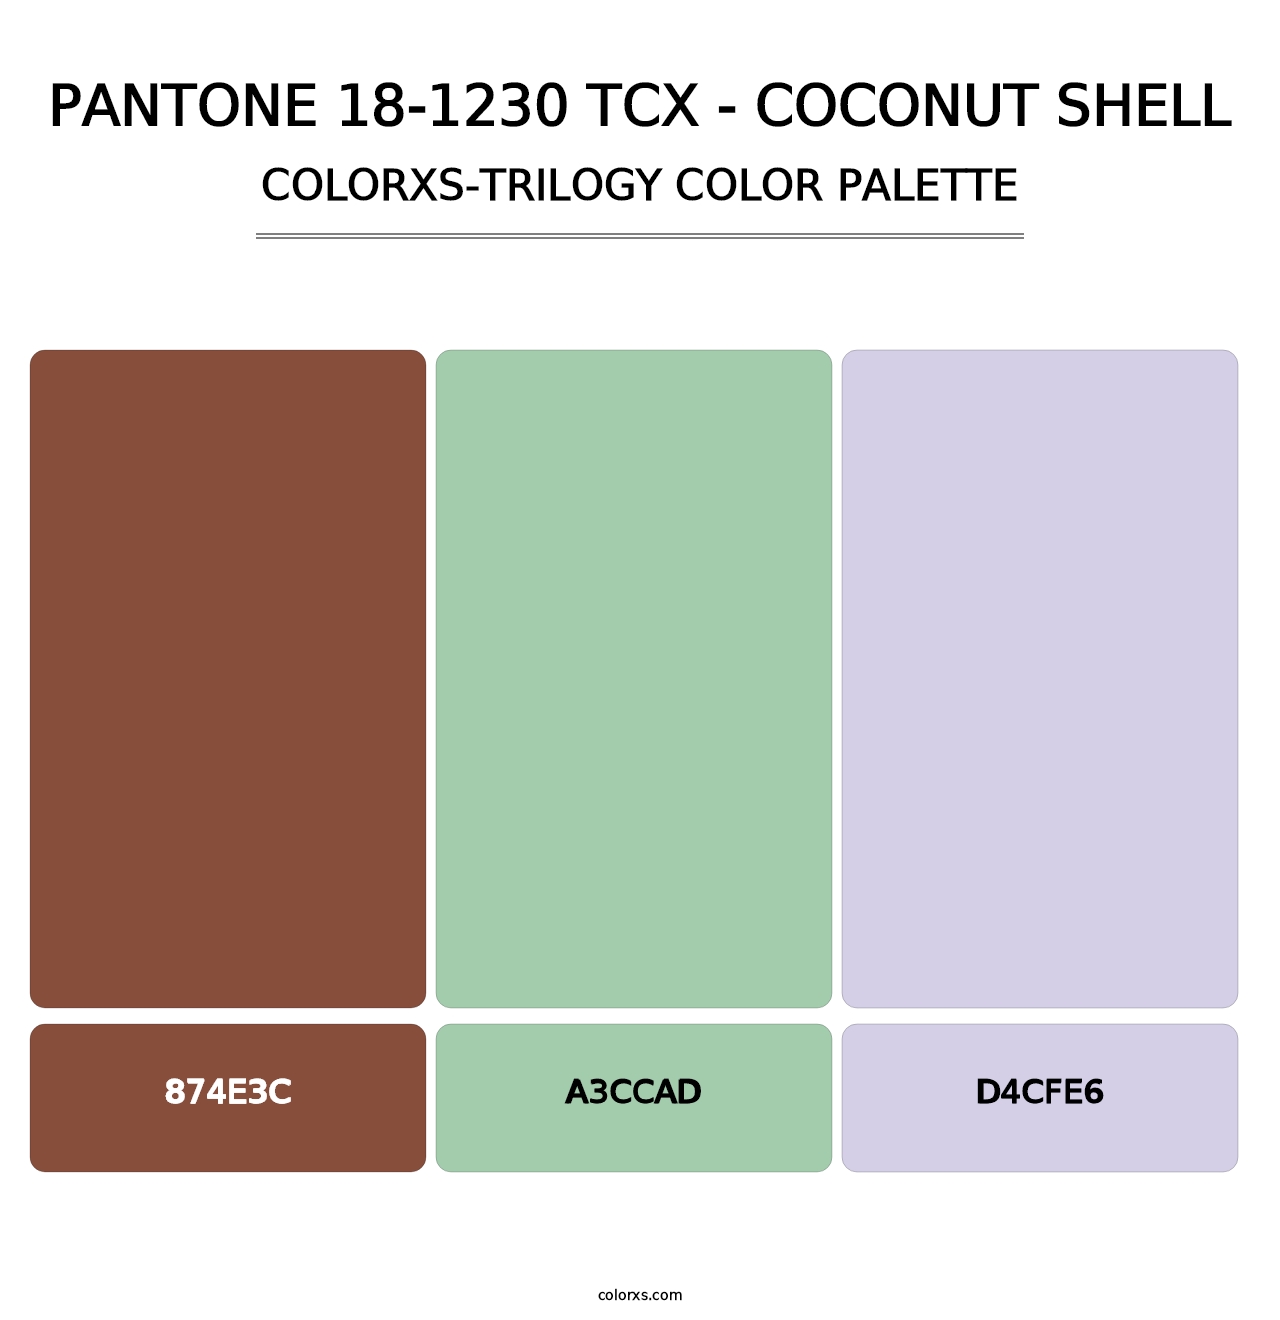 PANTONE 18-1230 TCX - Coconut Shell - Colorxs Trilogy Palette